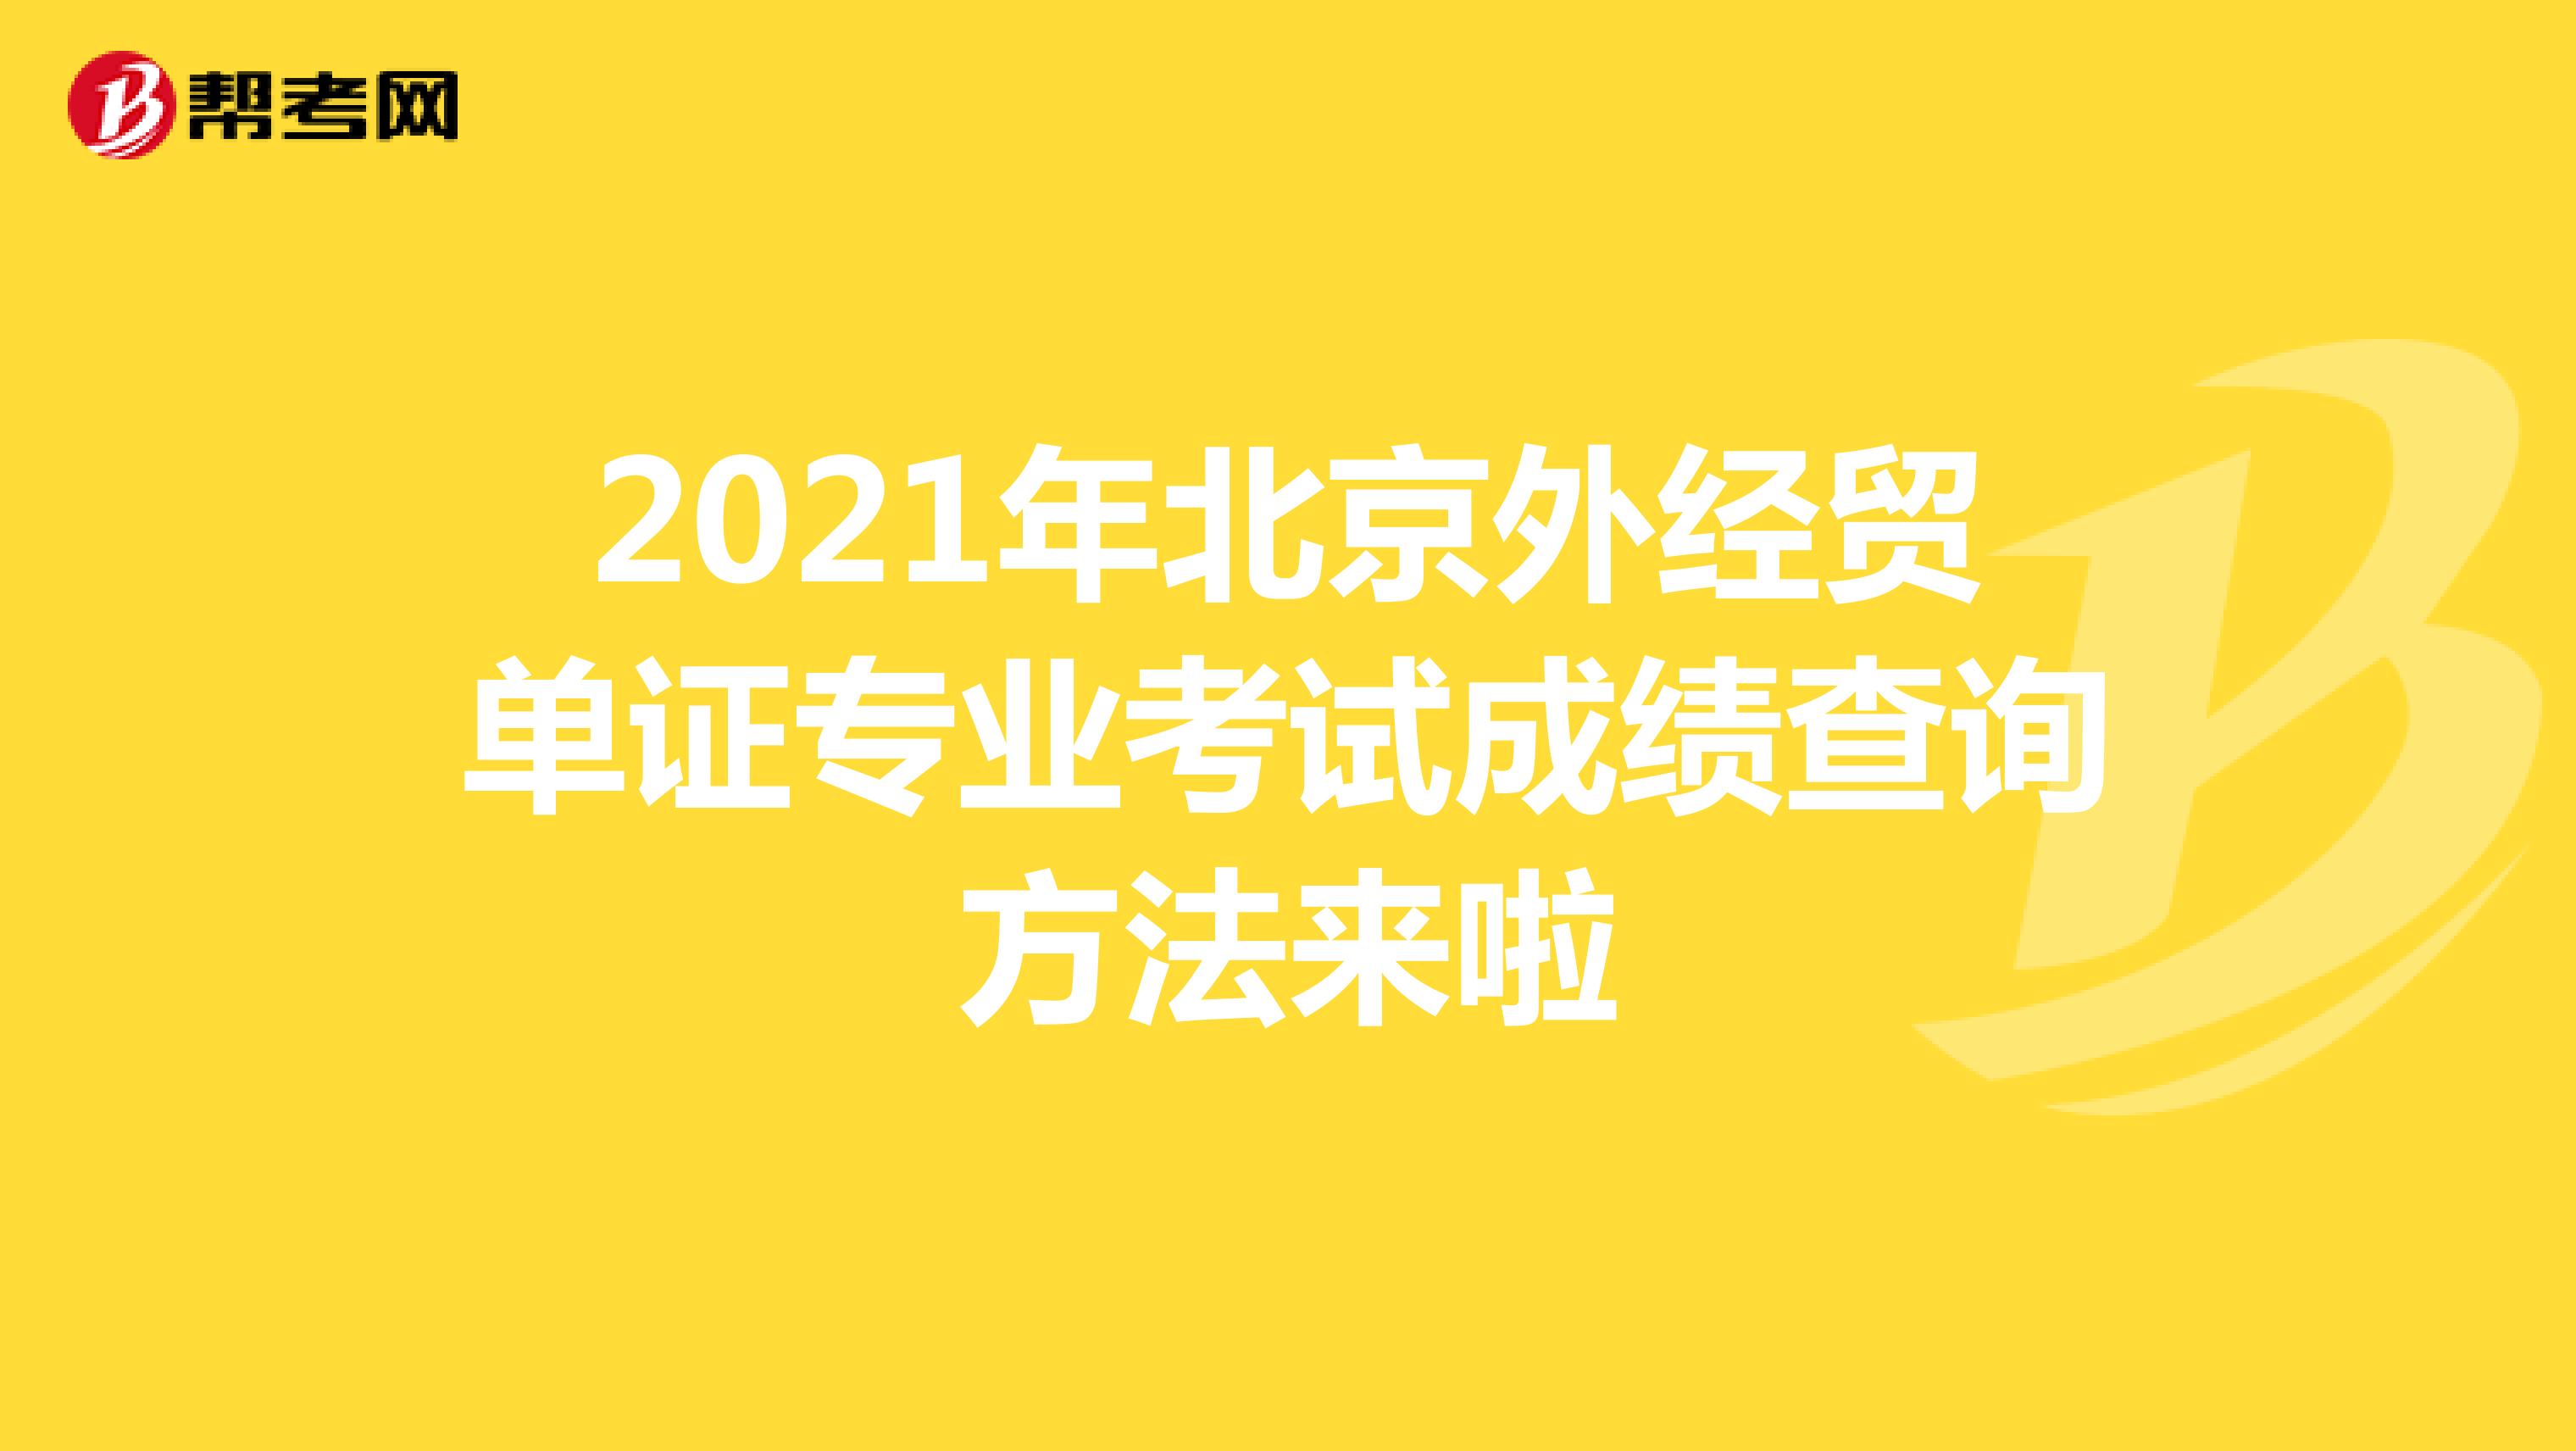 2021年北京外经贸单证专业考试成绩查询方法来啦